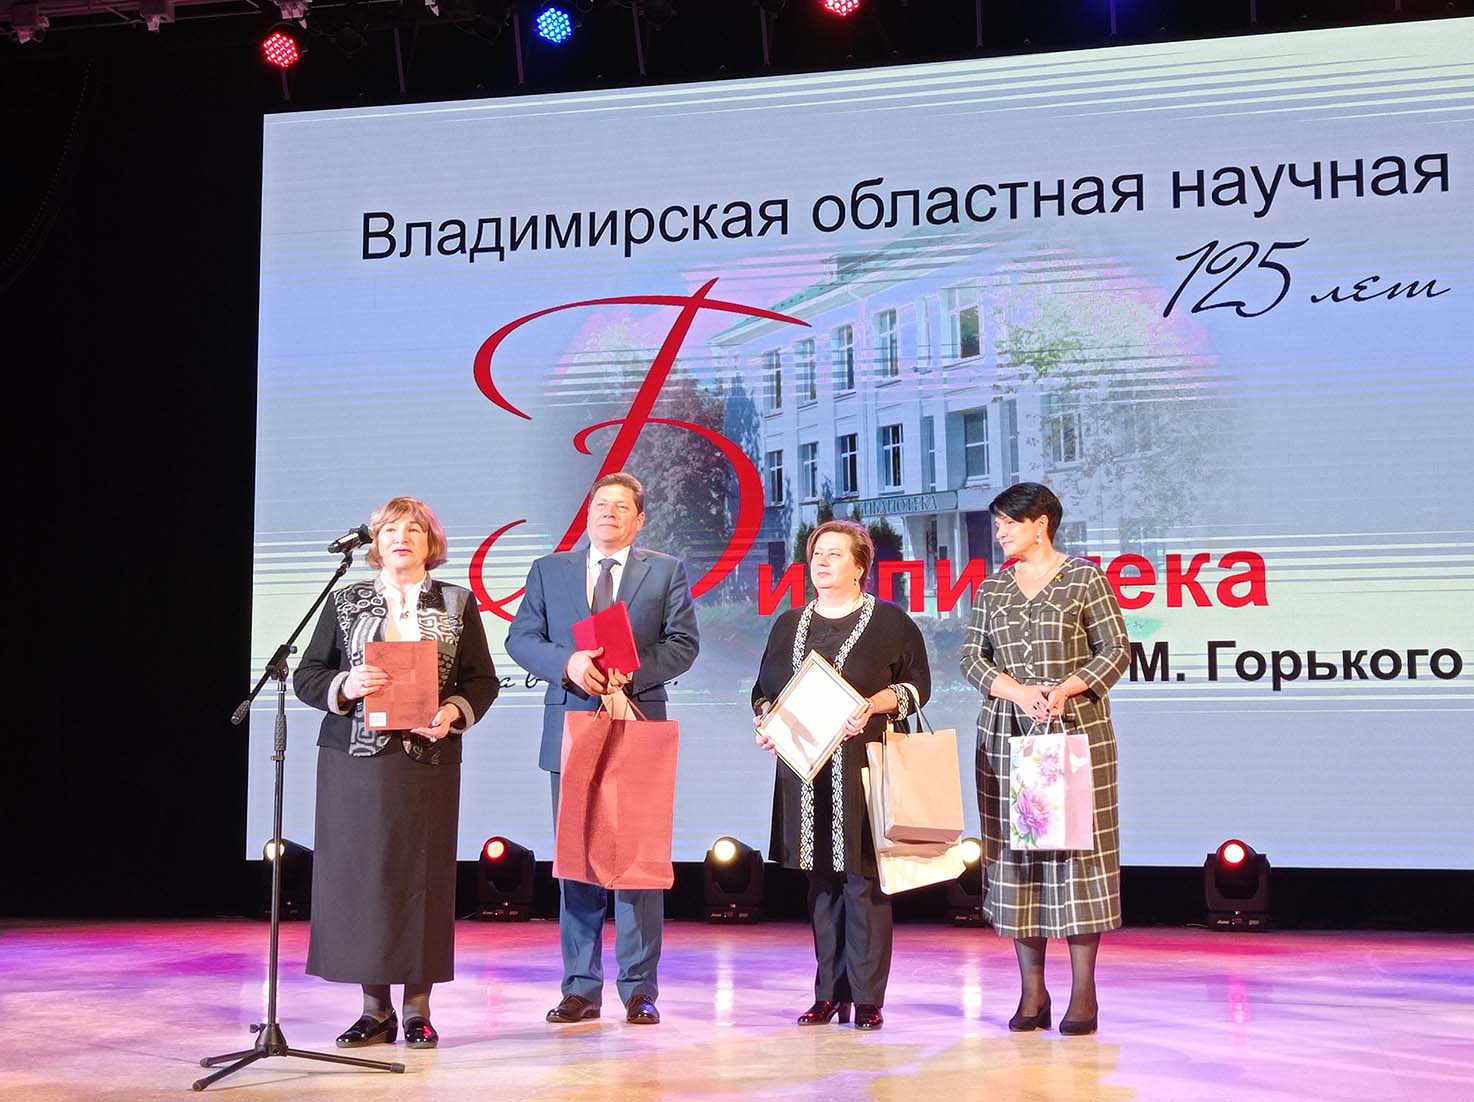 18 октября директор РГБИ А.А. Колганова приняла участие в юбилейной программе Владимирской областной научной библиотеки